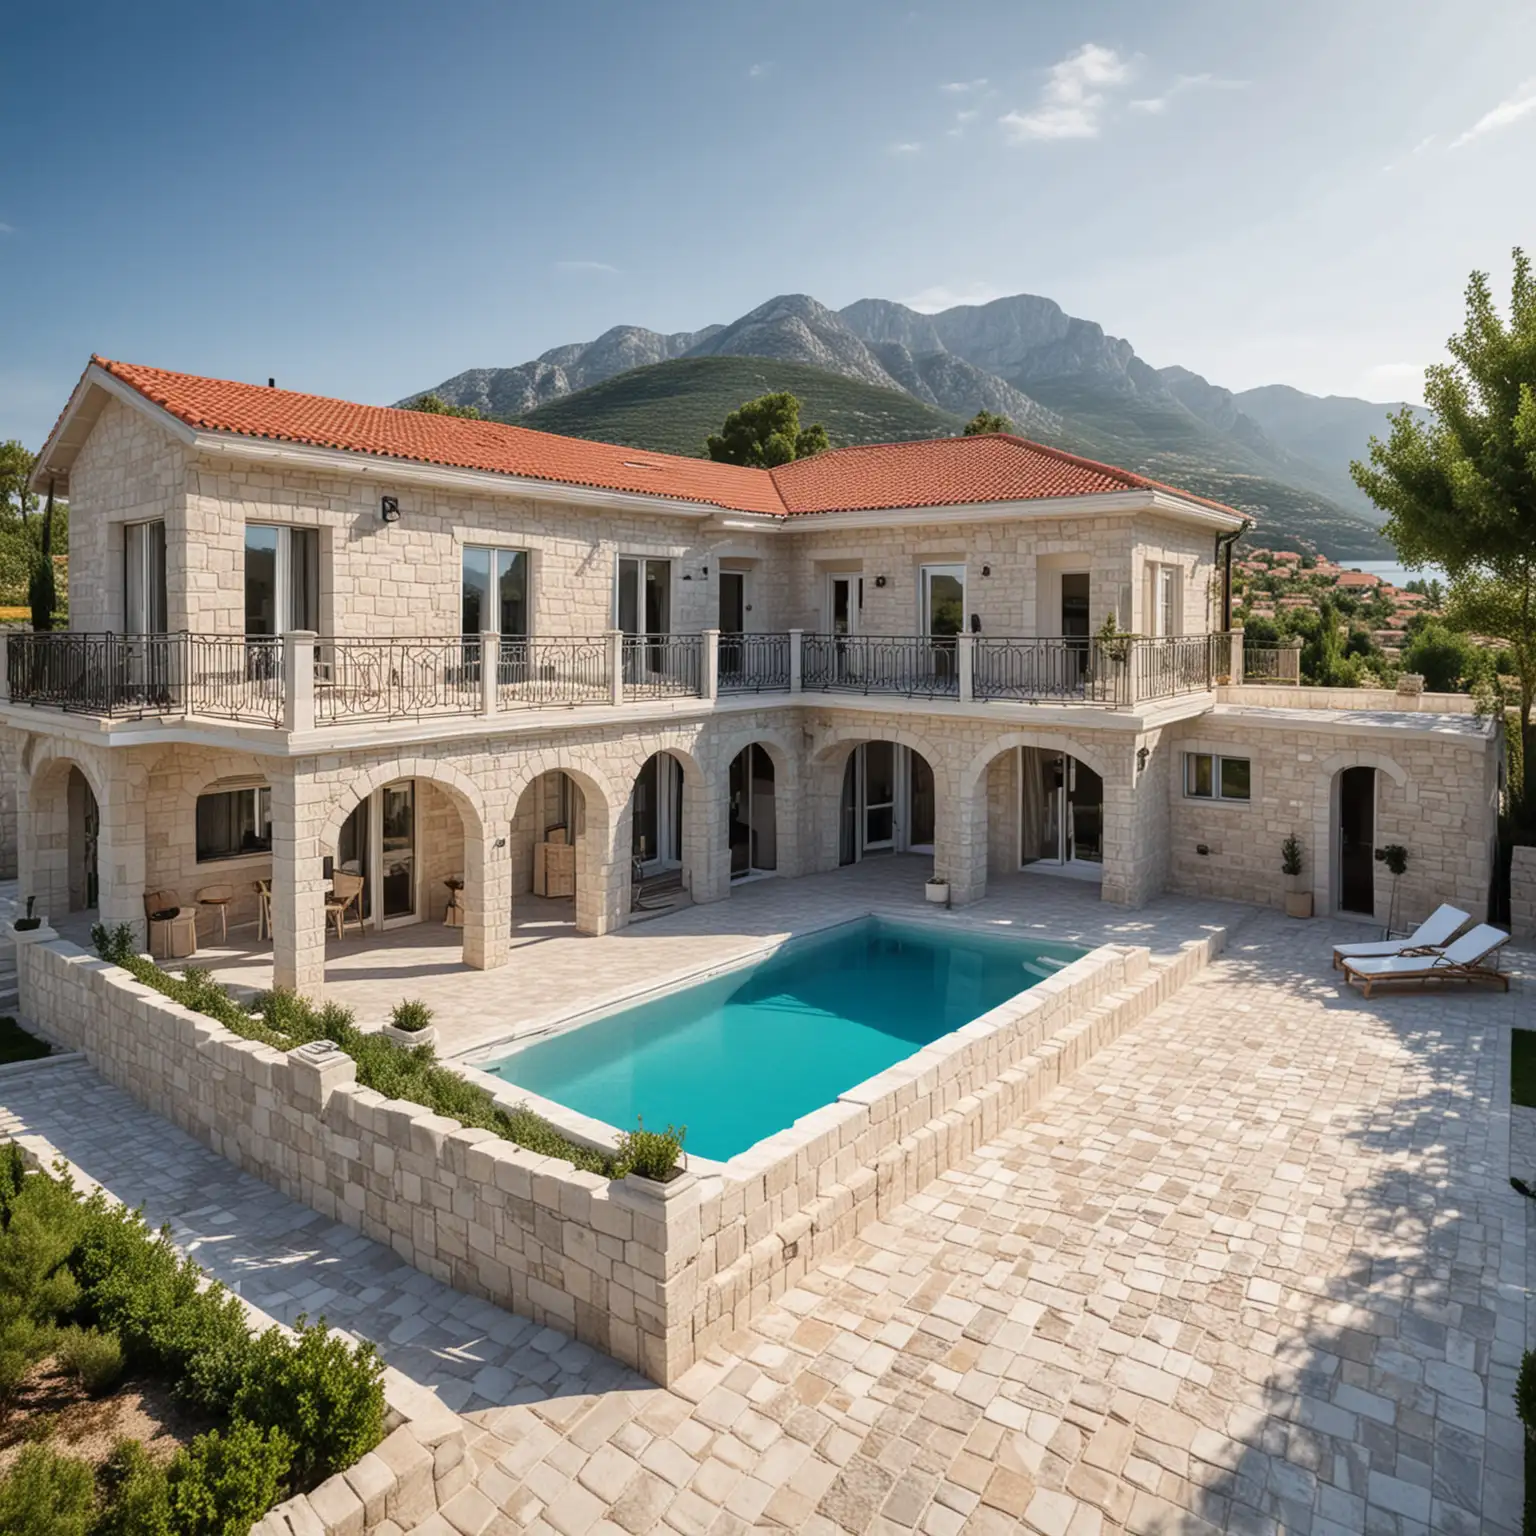 Erstelle ein Bild auf dem schöne Fertighäuser mit jeweils 2 Parkplätzen und einem Pool umgeben von einem schönen Garten zu sehen sind auf einer Fläche von 20x25 m2 in Montenegro, mediterran, mittelalterlich, edel, Limestone 